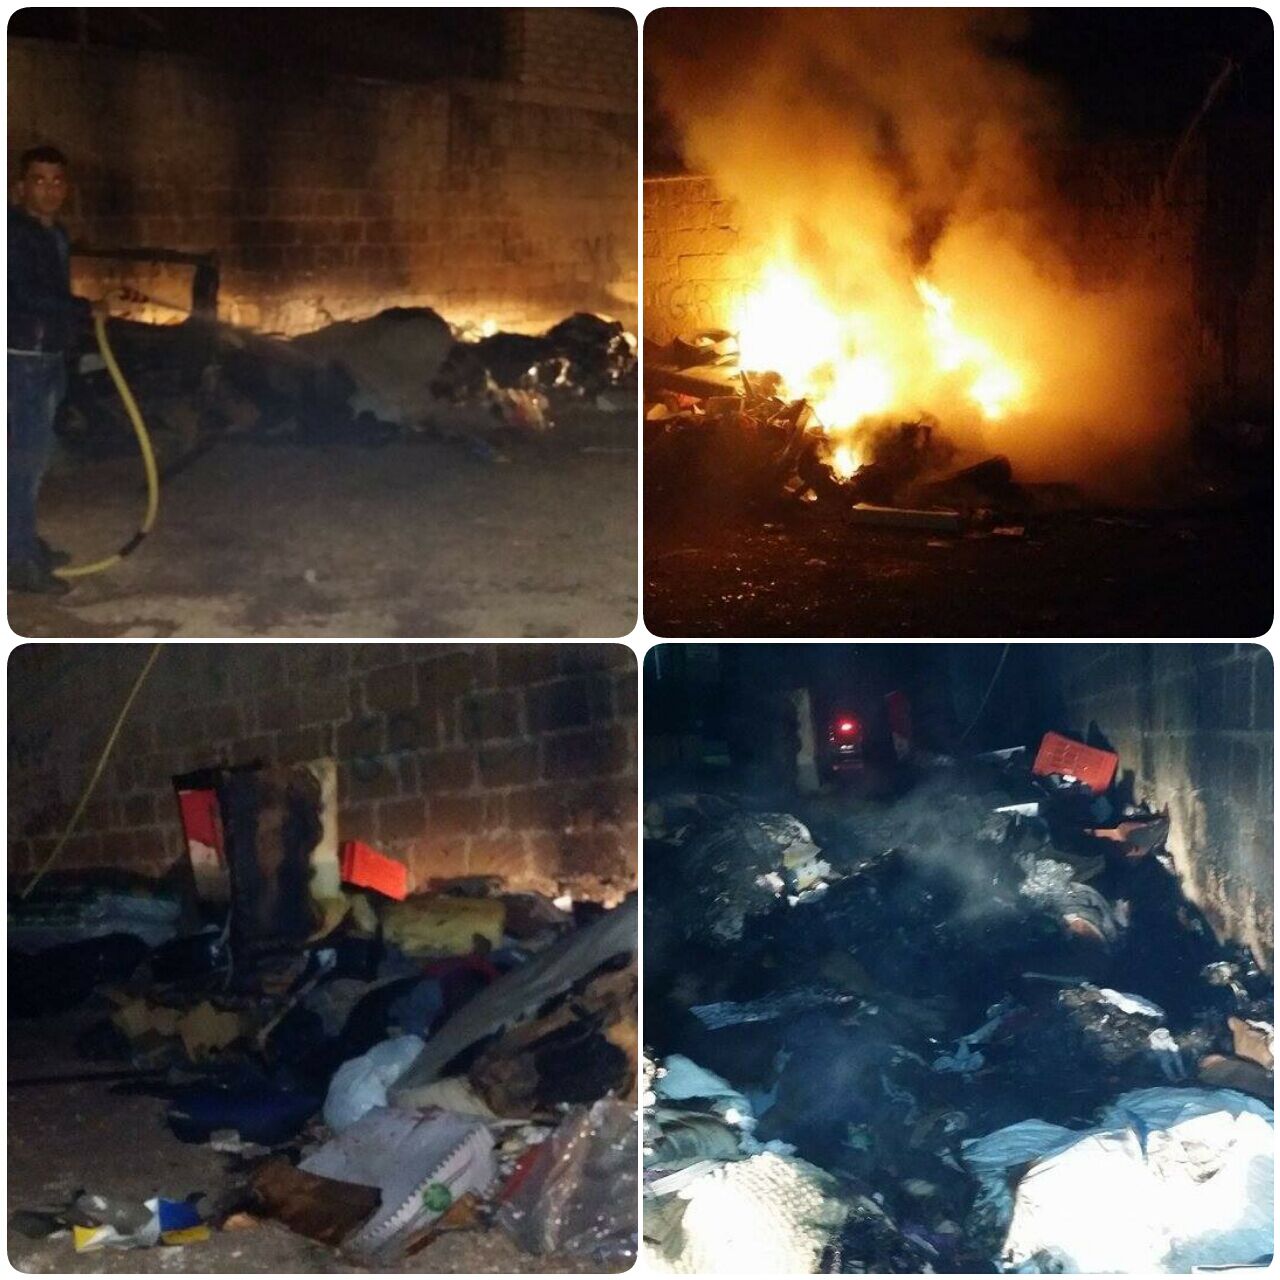  Incendio via Ex Alifana, rabbia Costanzo: “Poteva essere evitato, presenza rifiuti denunciata da tempo”